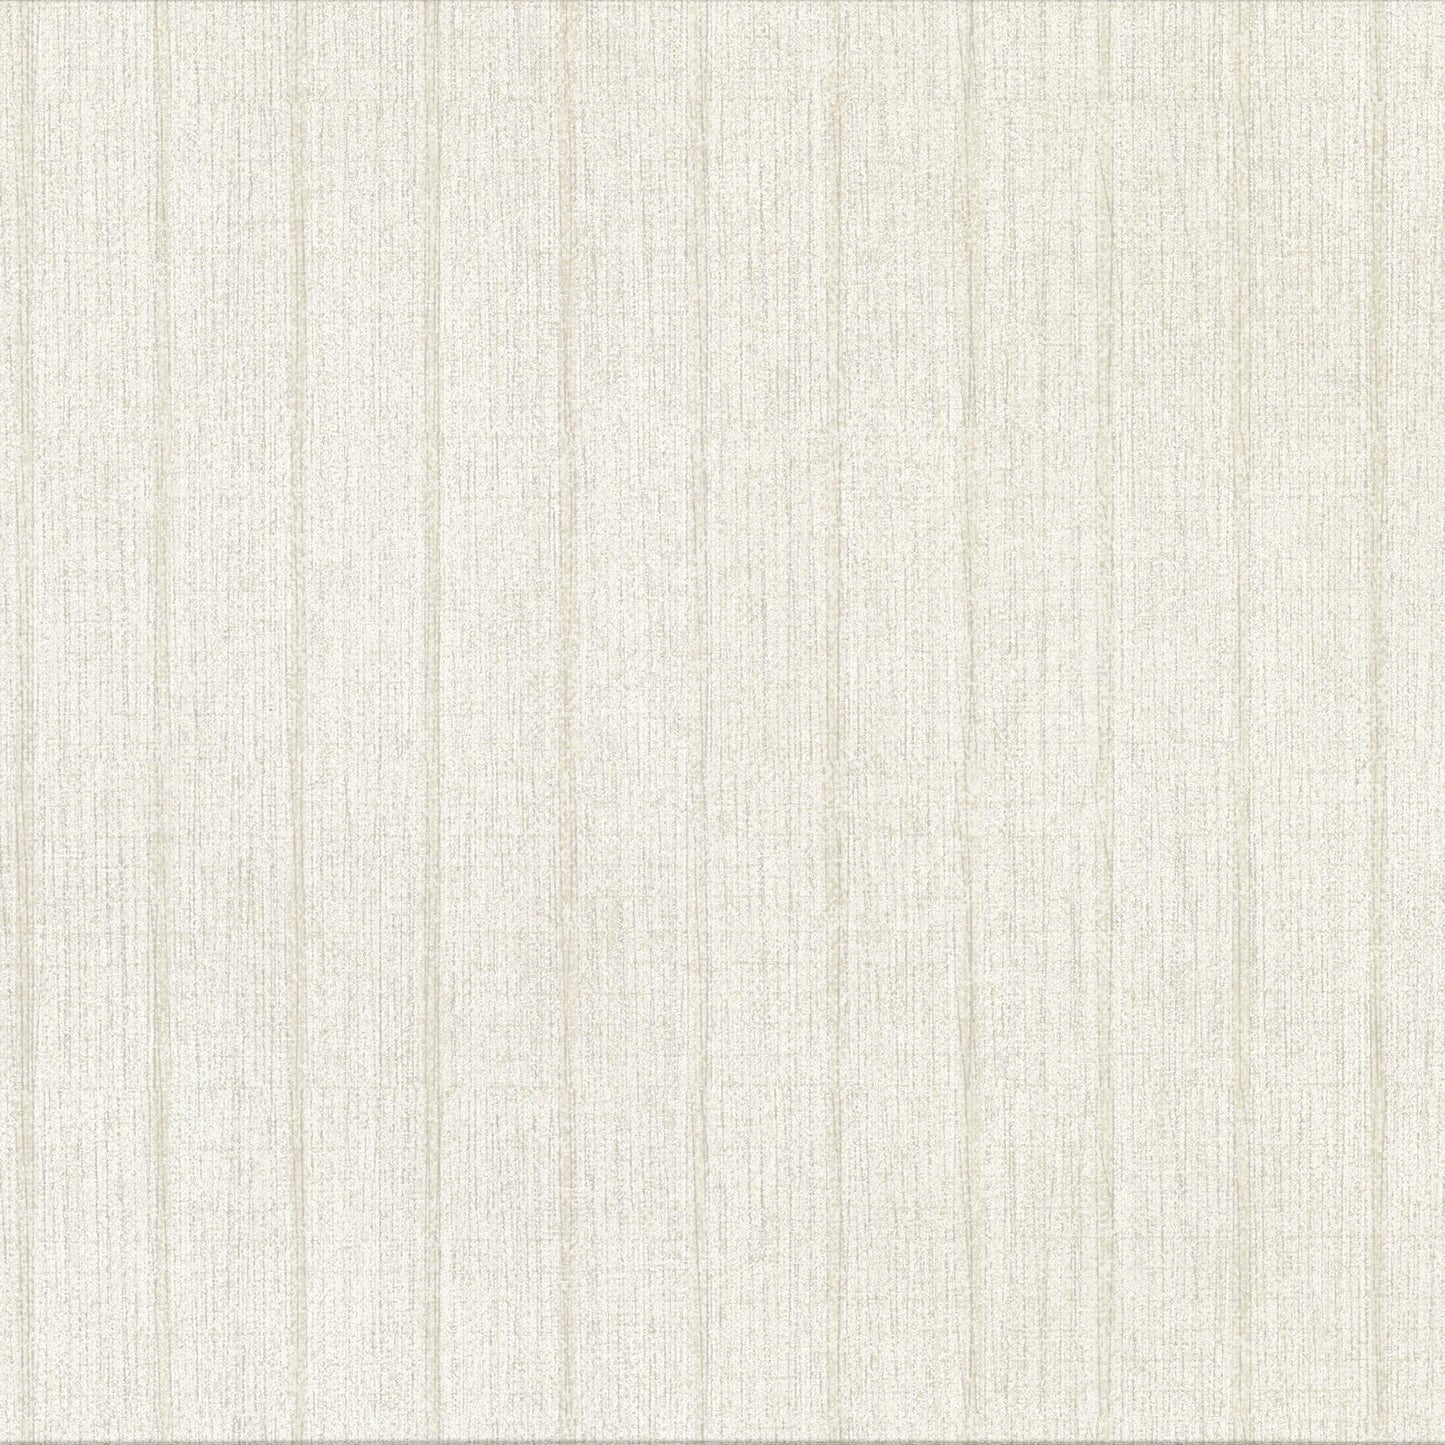 Order 2909-MLC-162 Riva Ramona Champagne Stripe Texture Brewster Wallpaper